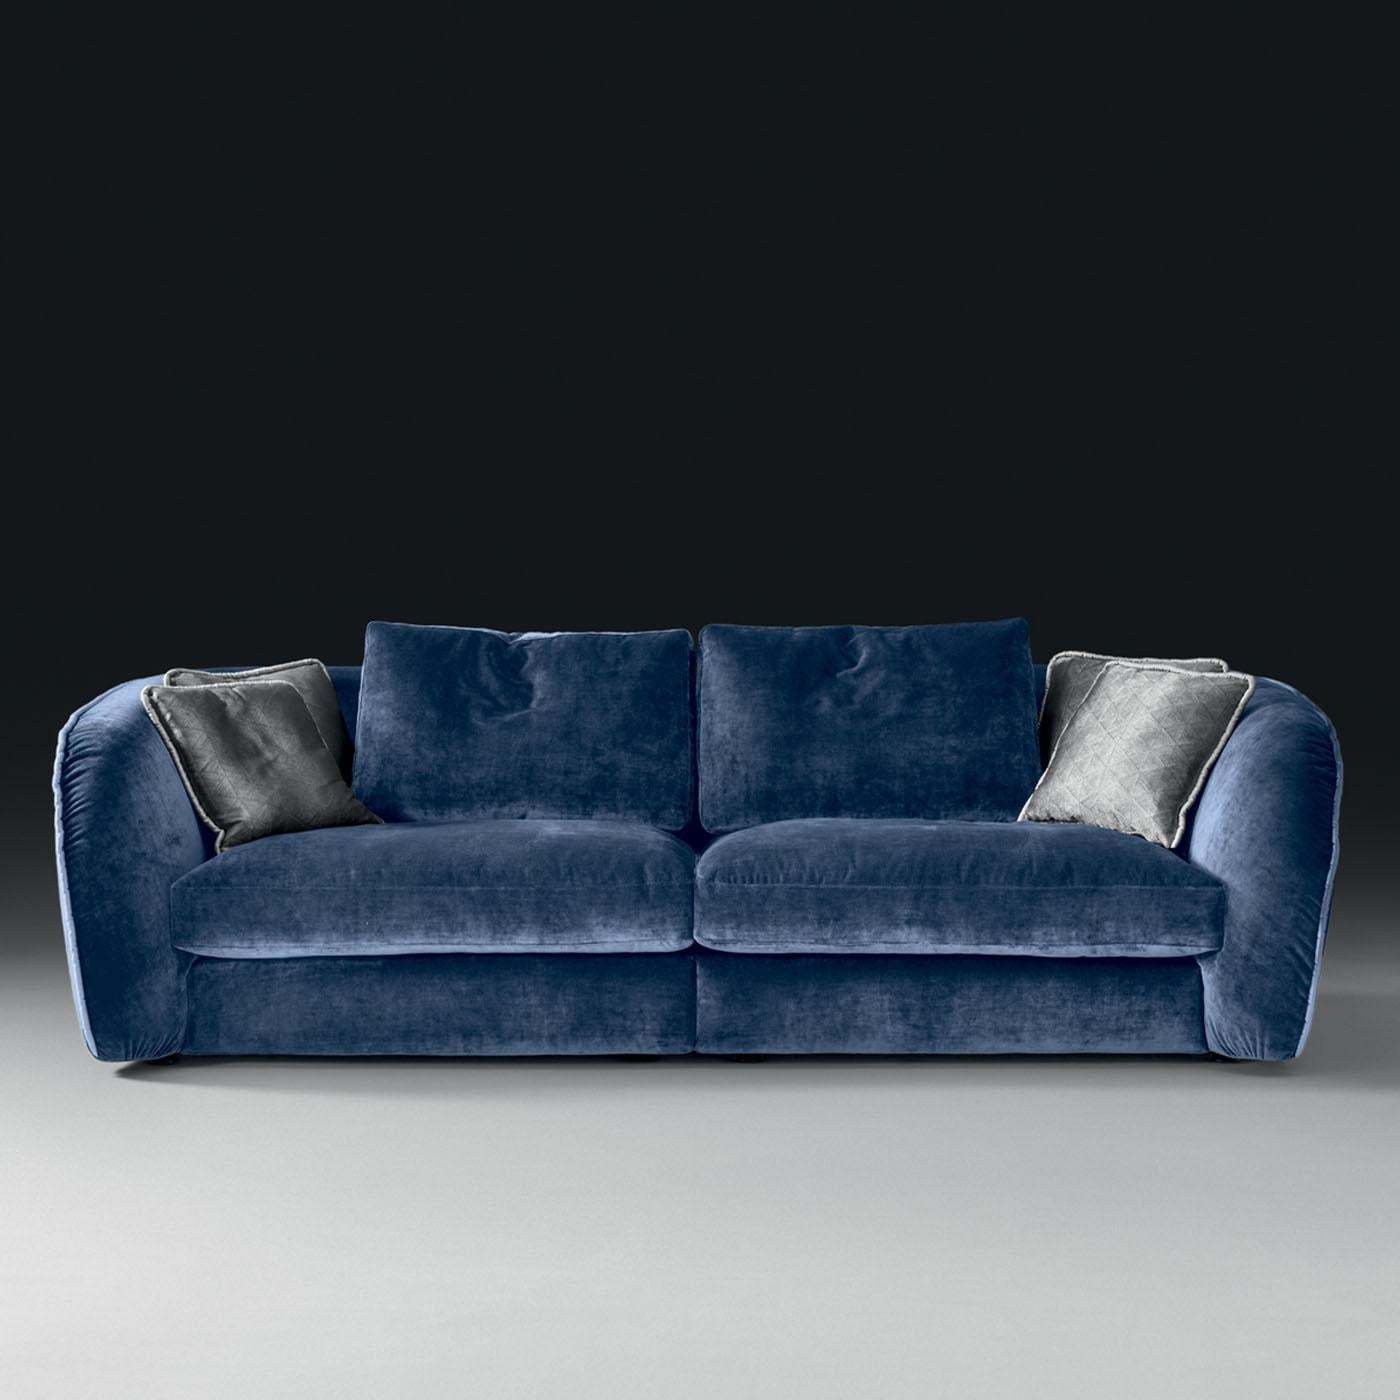 Exsudant un profil rétro-chic, ce canapé est une combinaison d'élégance et de confort. Il est doté d'une structure en peuplier équipée d'un système de ressorts élastiques, d'un rembourrage en fibre thermoliée et d'un tissu en jersey souple. Les